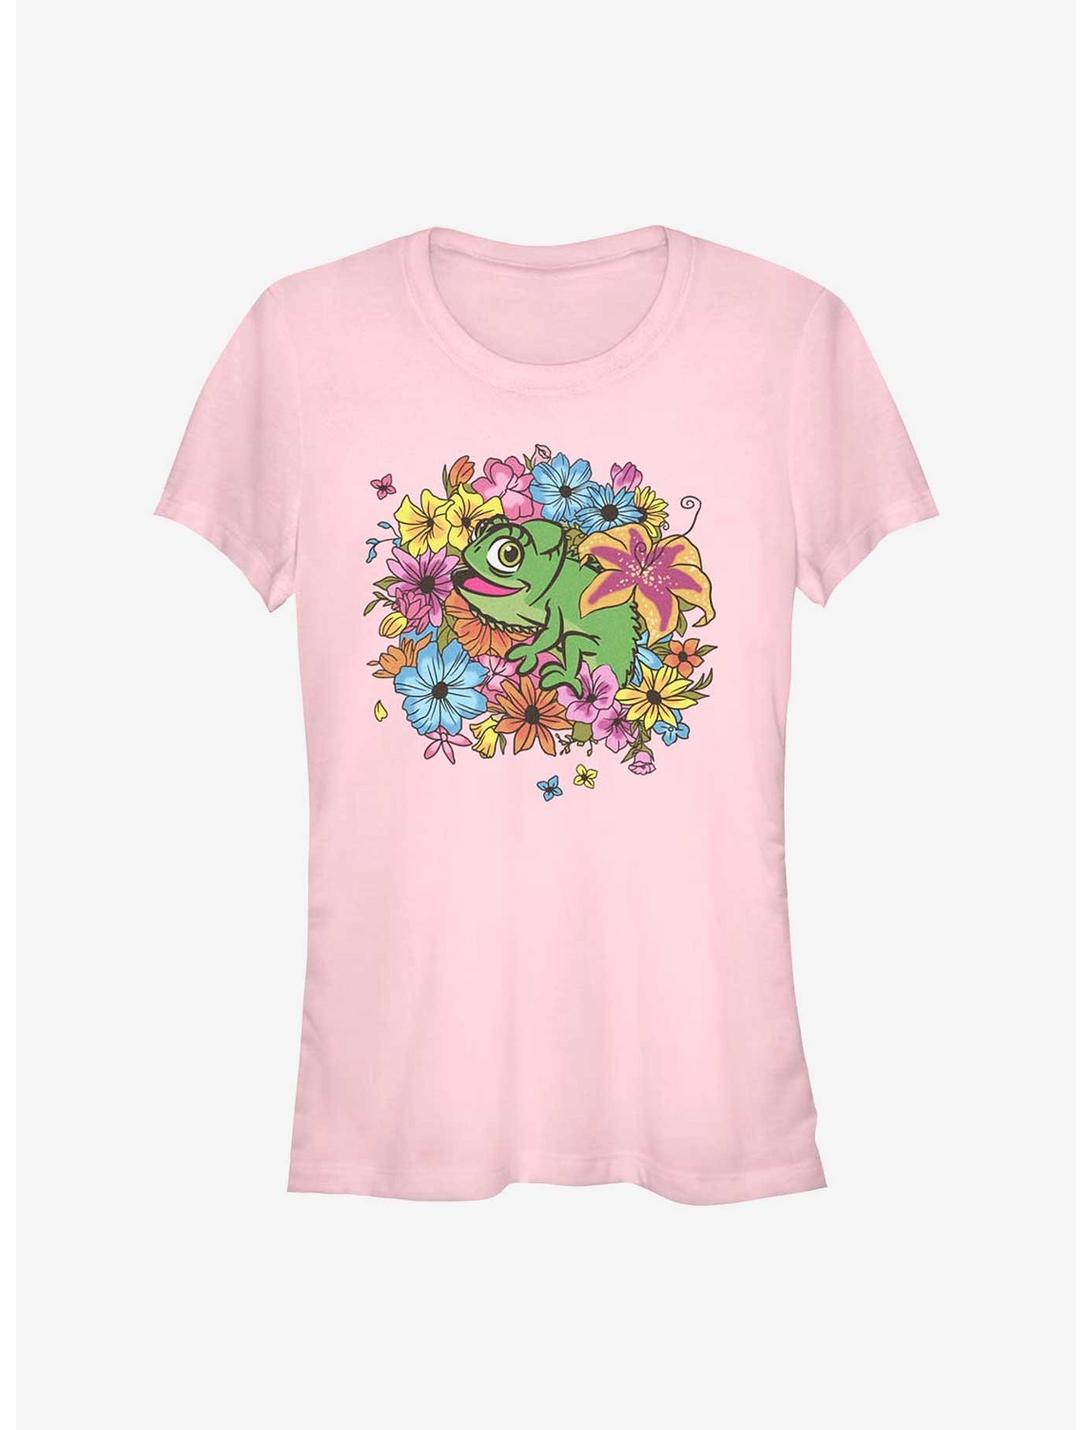 Disney Tangled Floral Pascal Girls T-Shirt, LIGHT PINK, hi-res